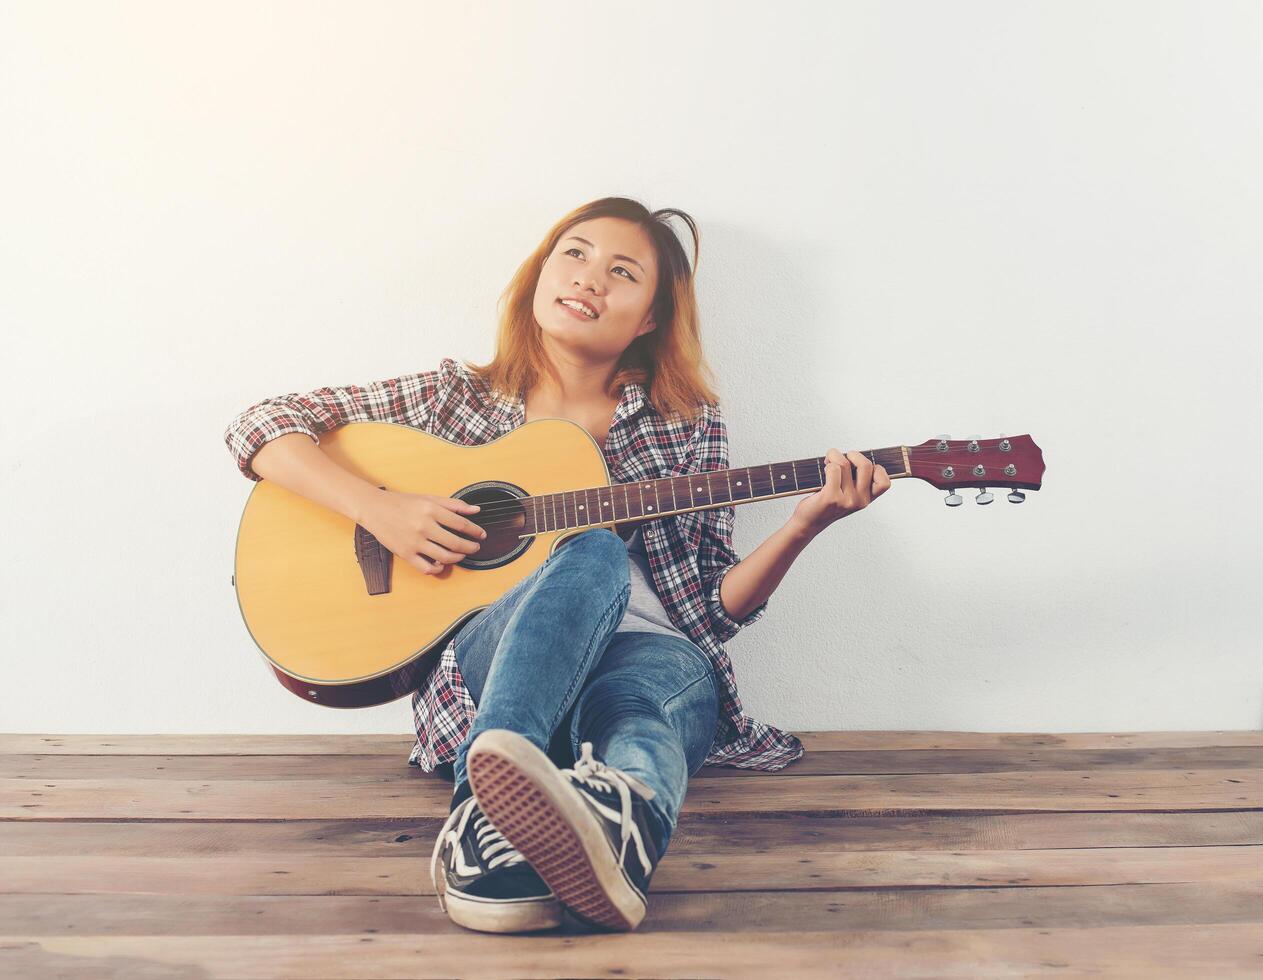 Retrato de estilo hipster mujer chillin con guitarra se ve tan feliz. foto